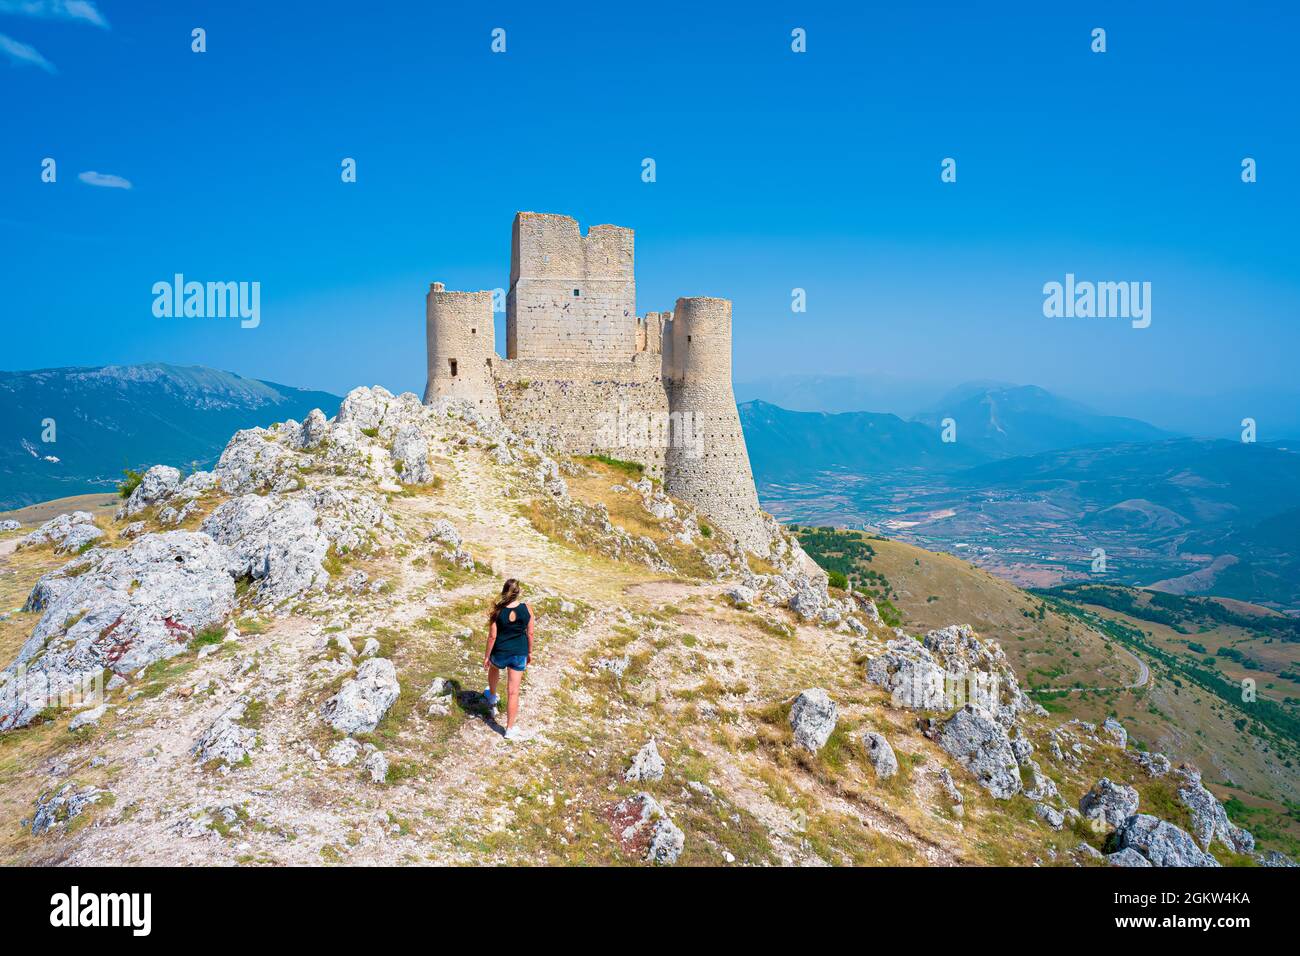 Castle of Rocca Calascio, Gran Sasso, Abruzzo, one of TOP 15 Castle in world Stock Photo